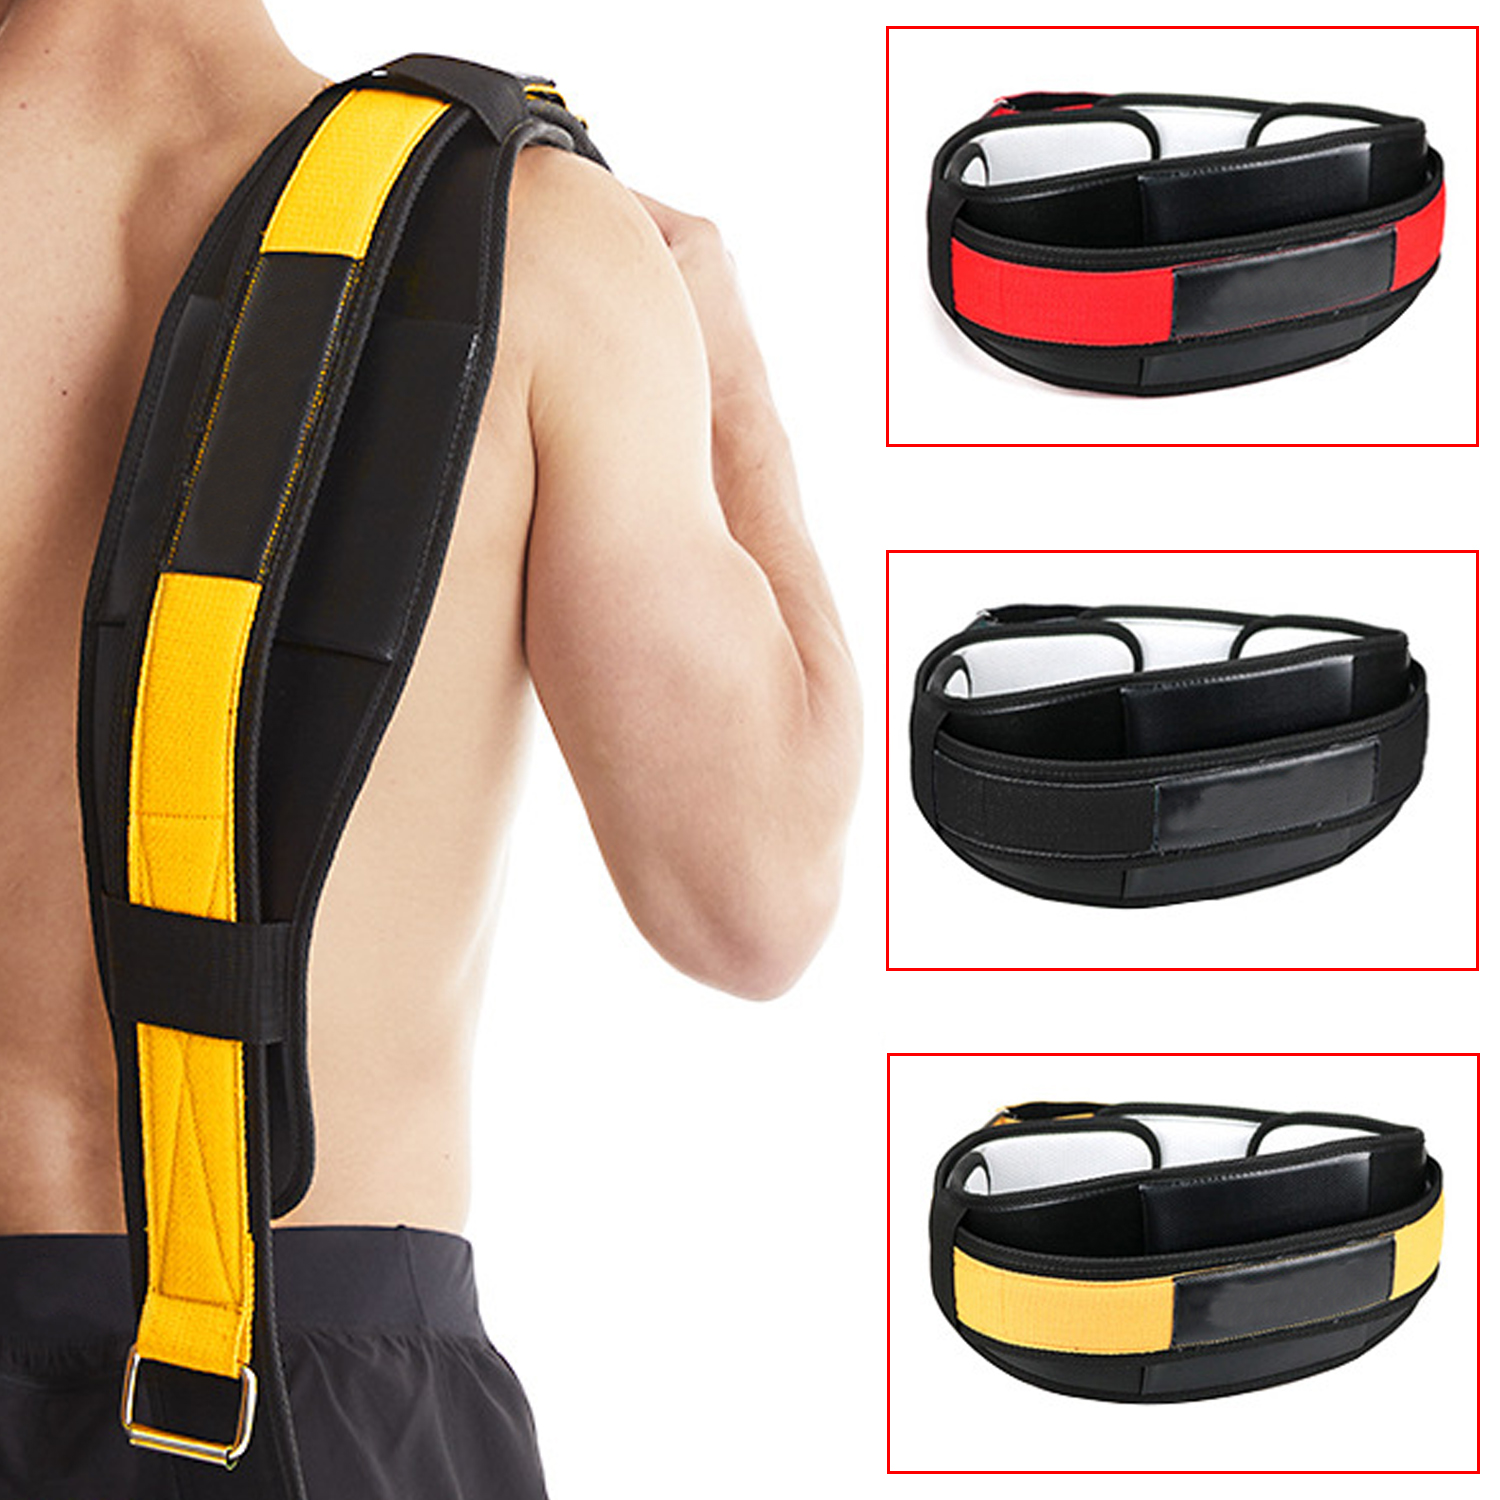 Cinturón de protección de cintura de alta calidad Cinturón de protección Levantamiento de cintura En cuclillas Tirar con fuerza Soporte de entrenamiento Fitness profesional y protección de cintura